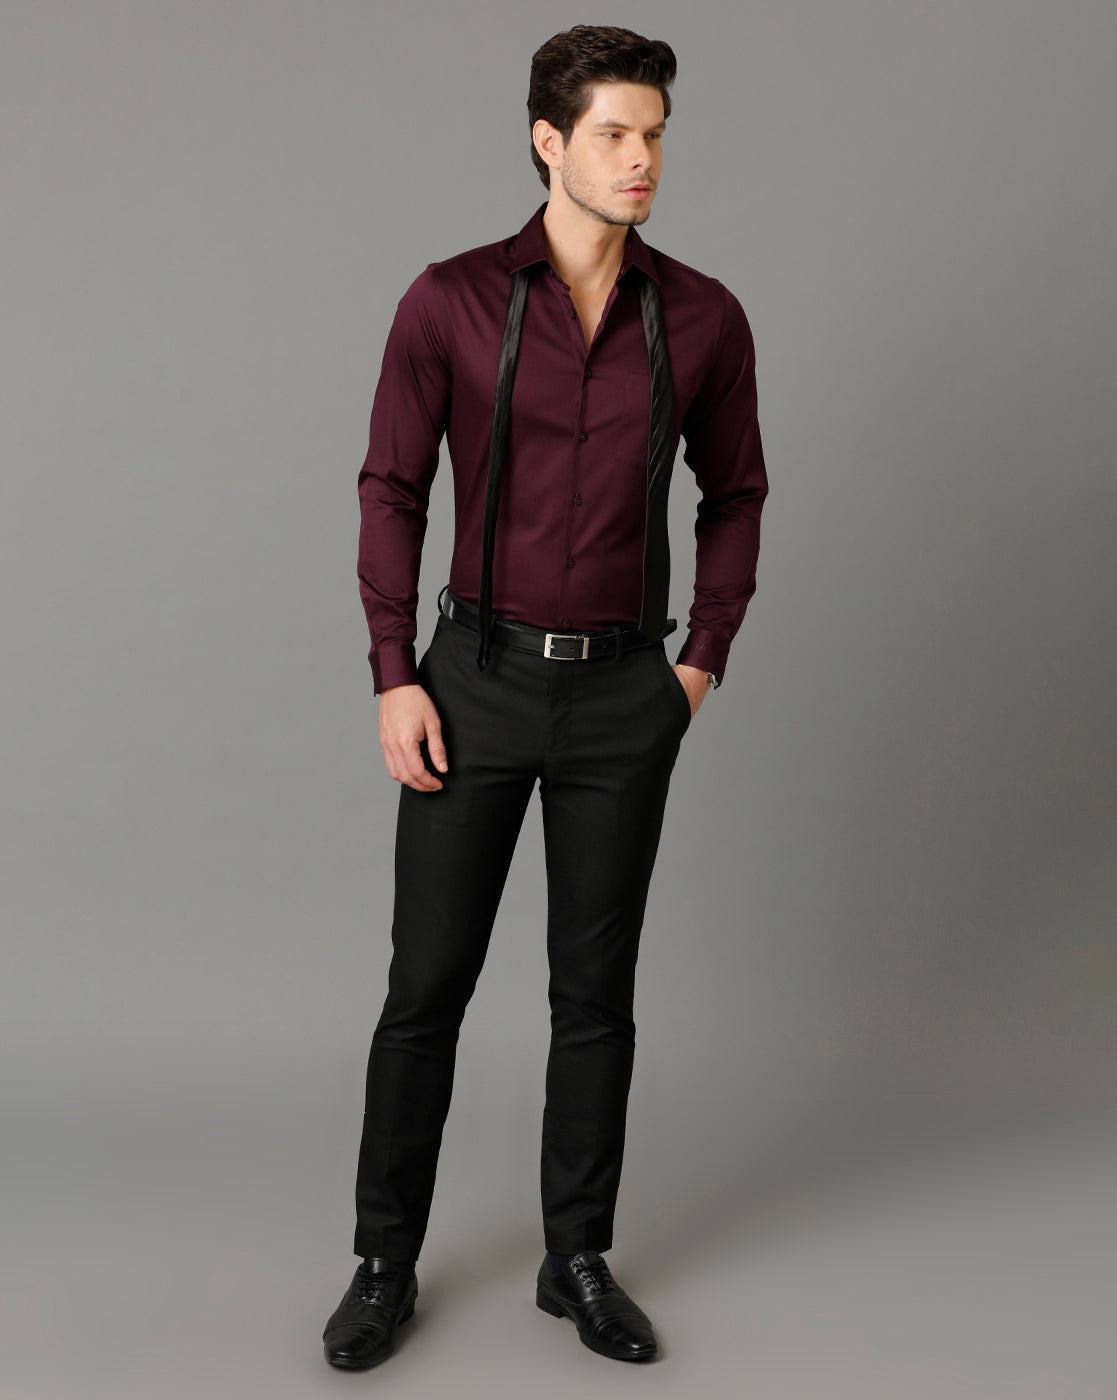 Aldeno Men Solid Formal Burgundy Shirt (SABOG)